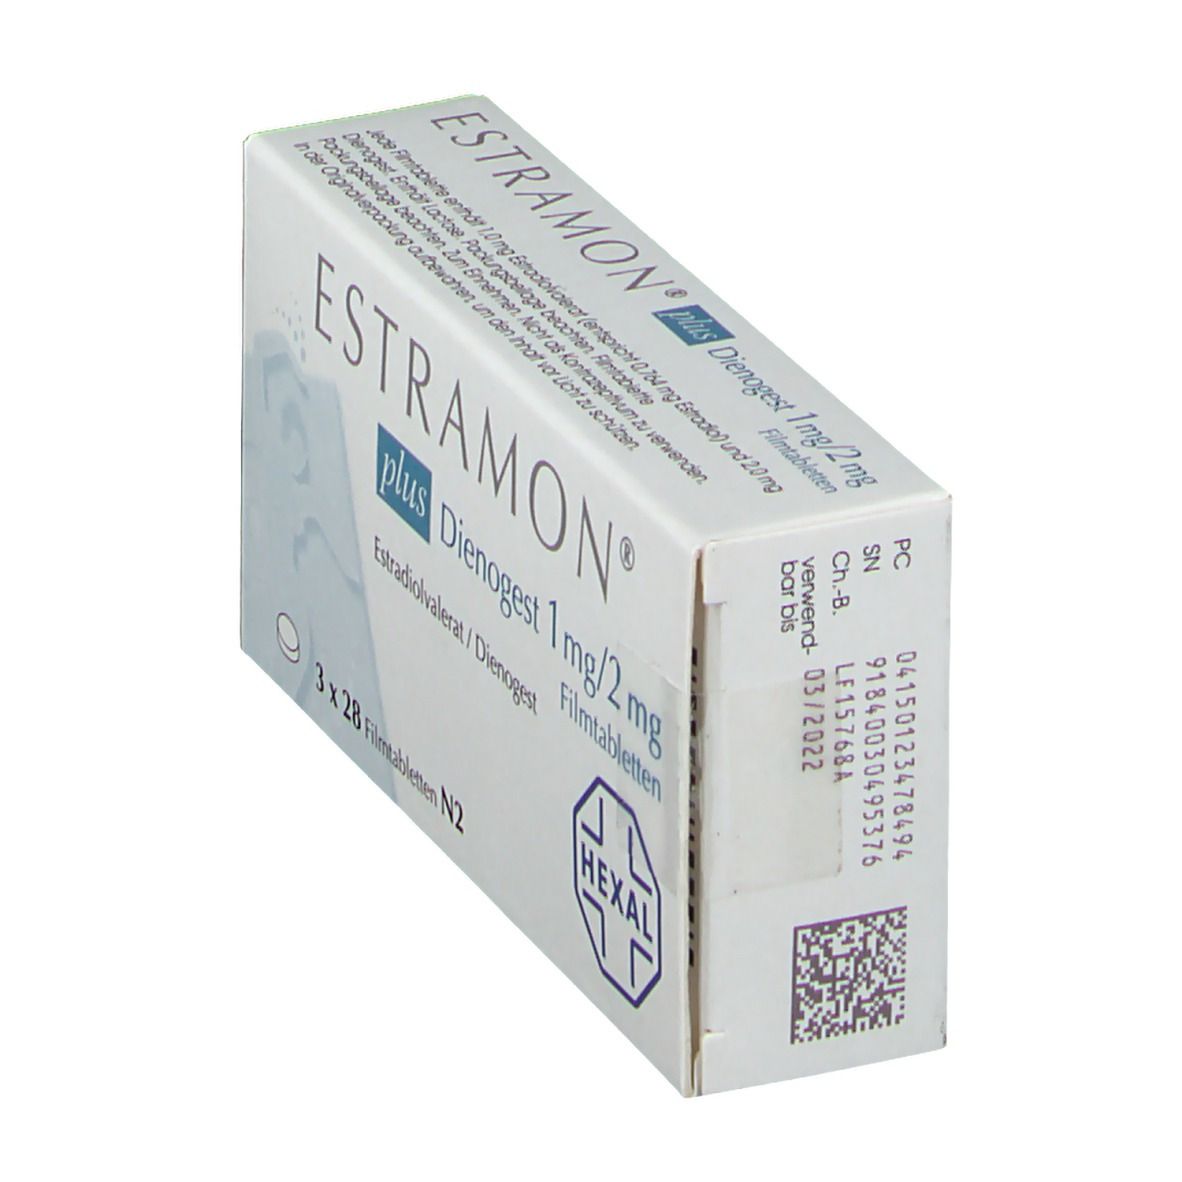 ESTRAMON® plus Dienogest 1 mg/ 2 mg